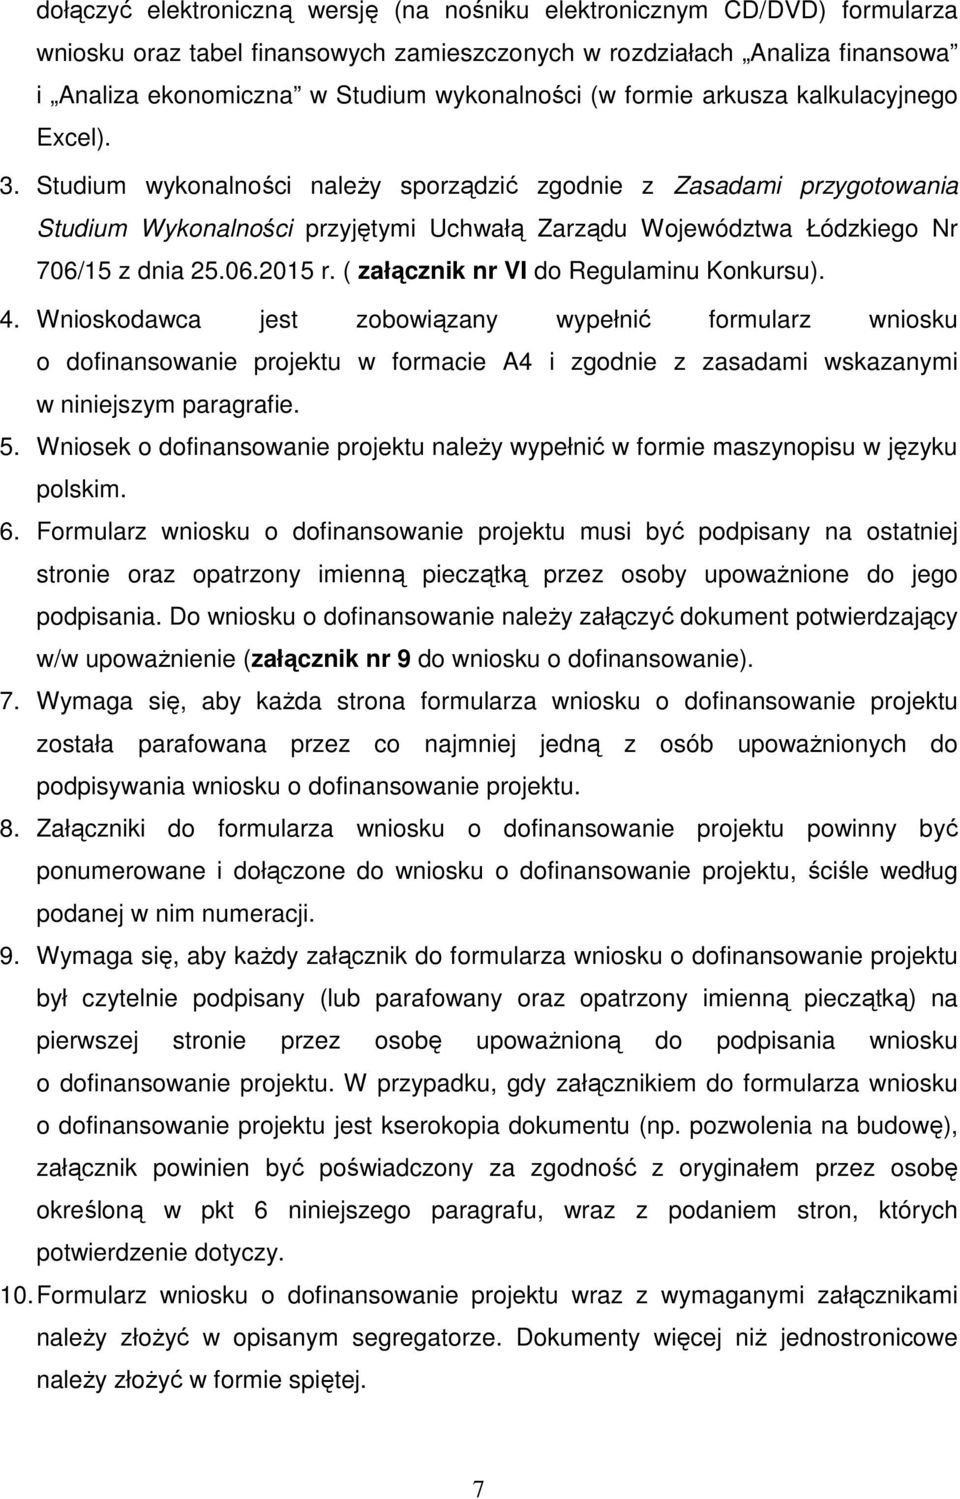 Studium wykonalności naleŝy sporządzić zgodnie z Zasadami przygotowania Studium Wykonalności przyjętymi Uchwałą Zarządu Województwa Łódzkiego Nr 706/15 z dnia 25.06.2015 r.